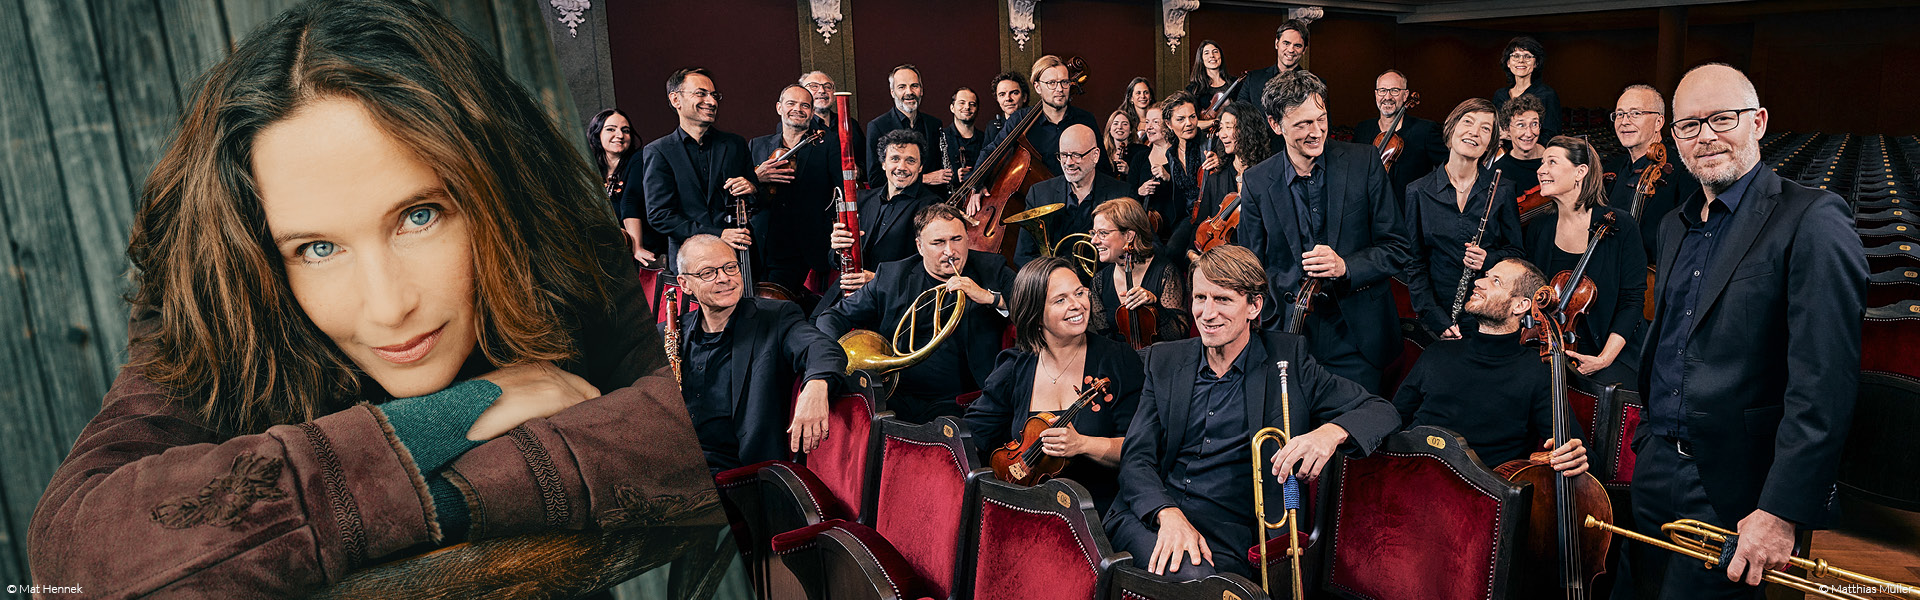 Hélène Grimaud & l’Orchestre de Chambre de Bâle (KOB), direction Daniel Bard